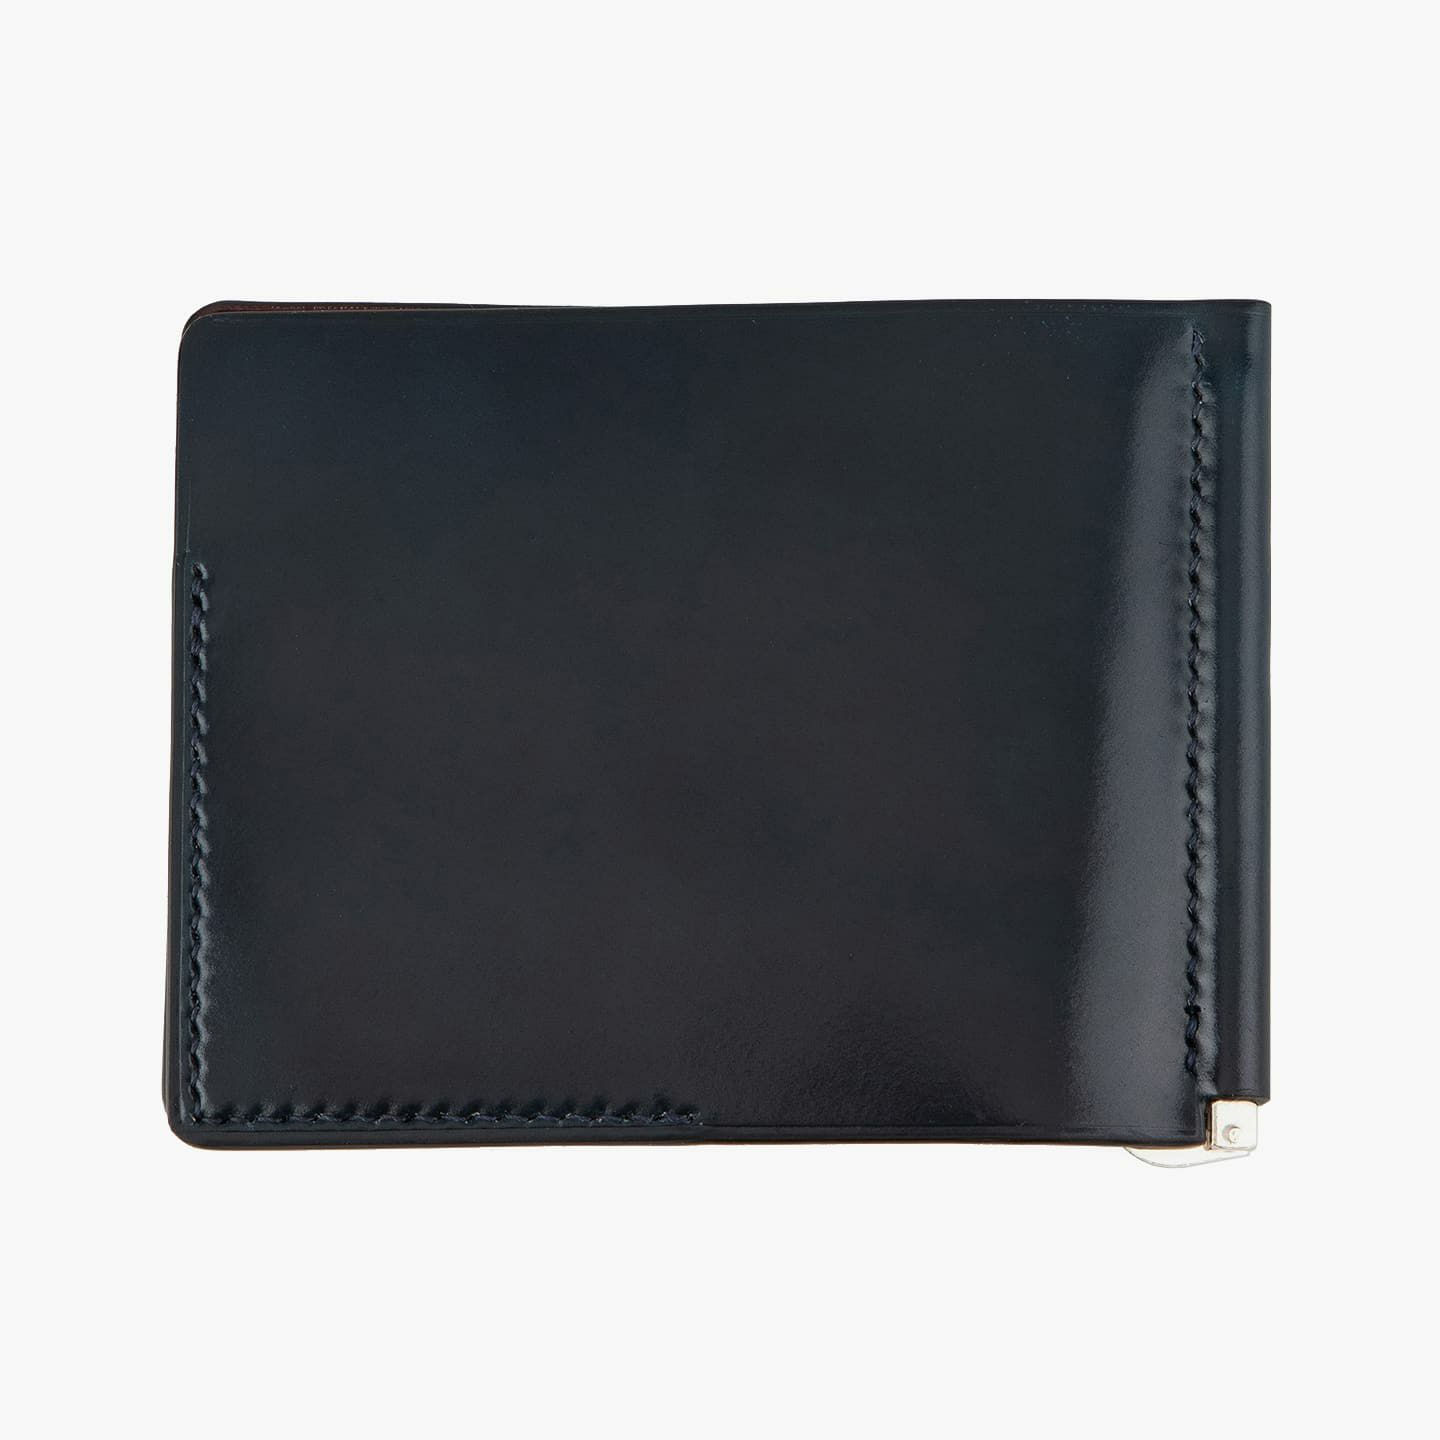 シェルコードバン マネークリップ #K01 | 大人のバッグ・財布 